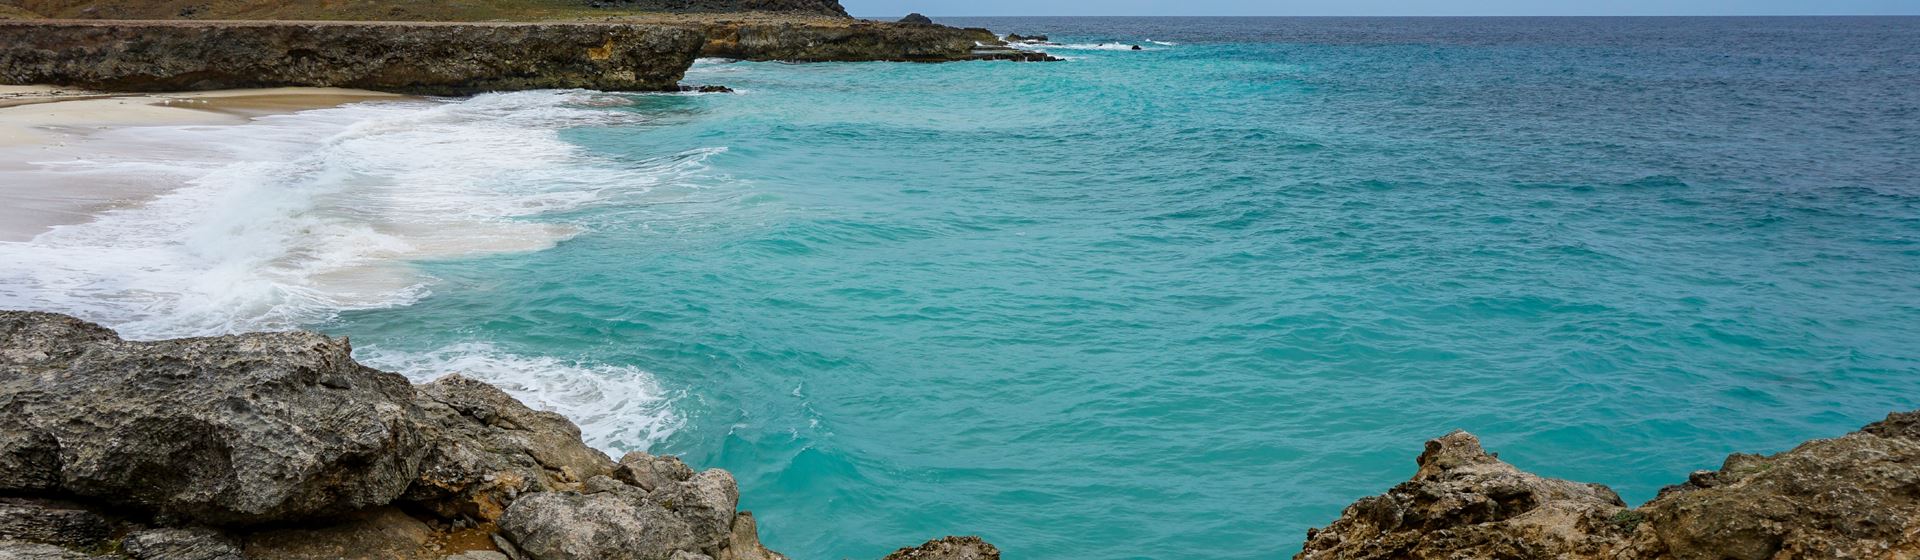 Dos Playa Beach op Aruba. Vanaf rotsen uitzicht op een klein strand en blauwe zee.